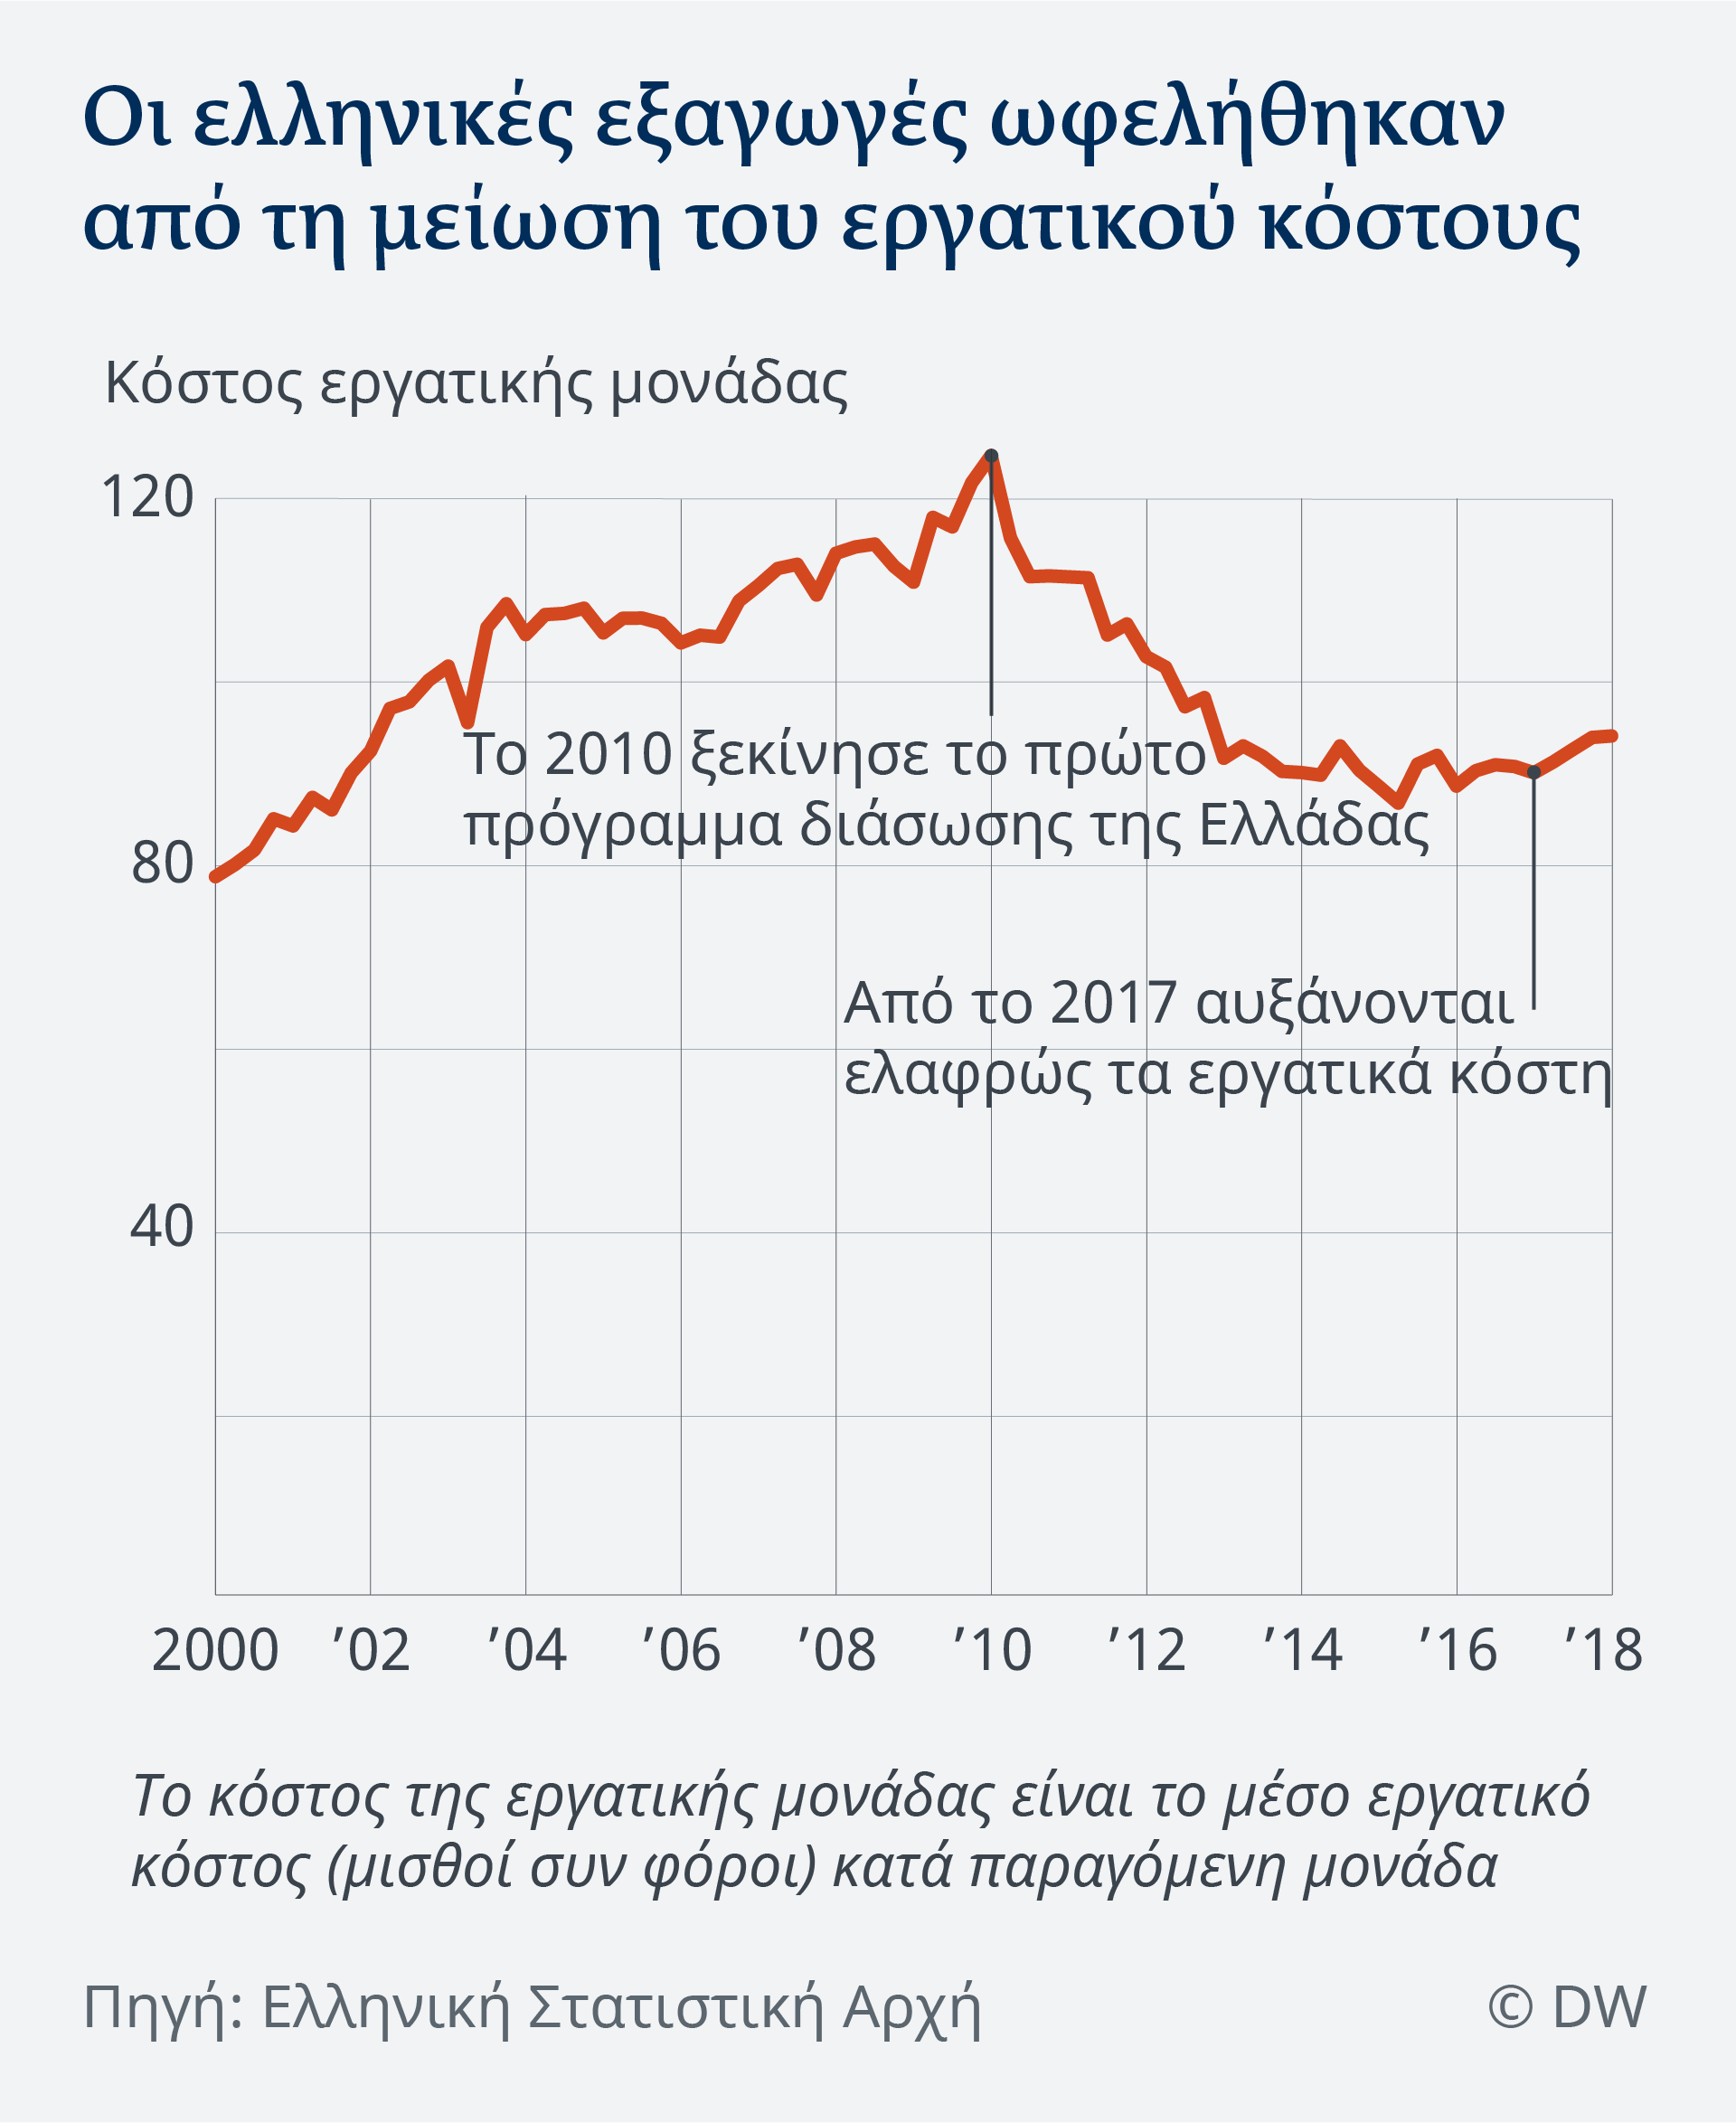 Οι ελληνικές εξαγωγές ωφελούνται από τη δραστική μείωση του εργατικού κόστους που από το 2010 συρρικνώθηκε κατά 30%